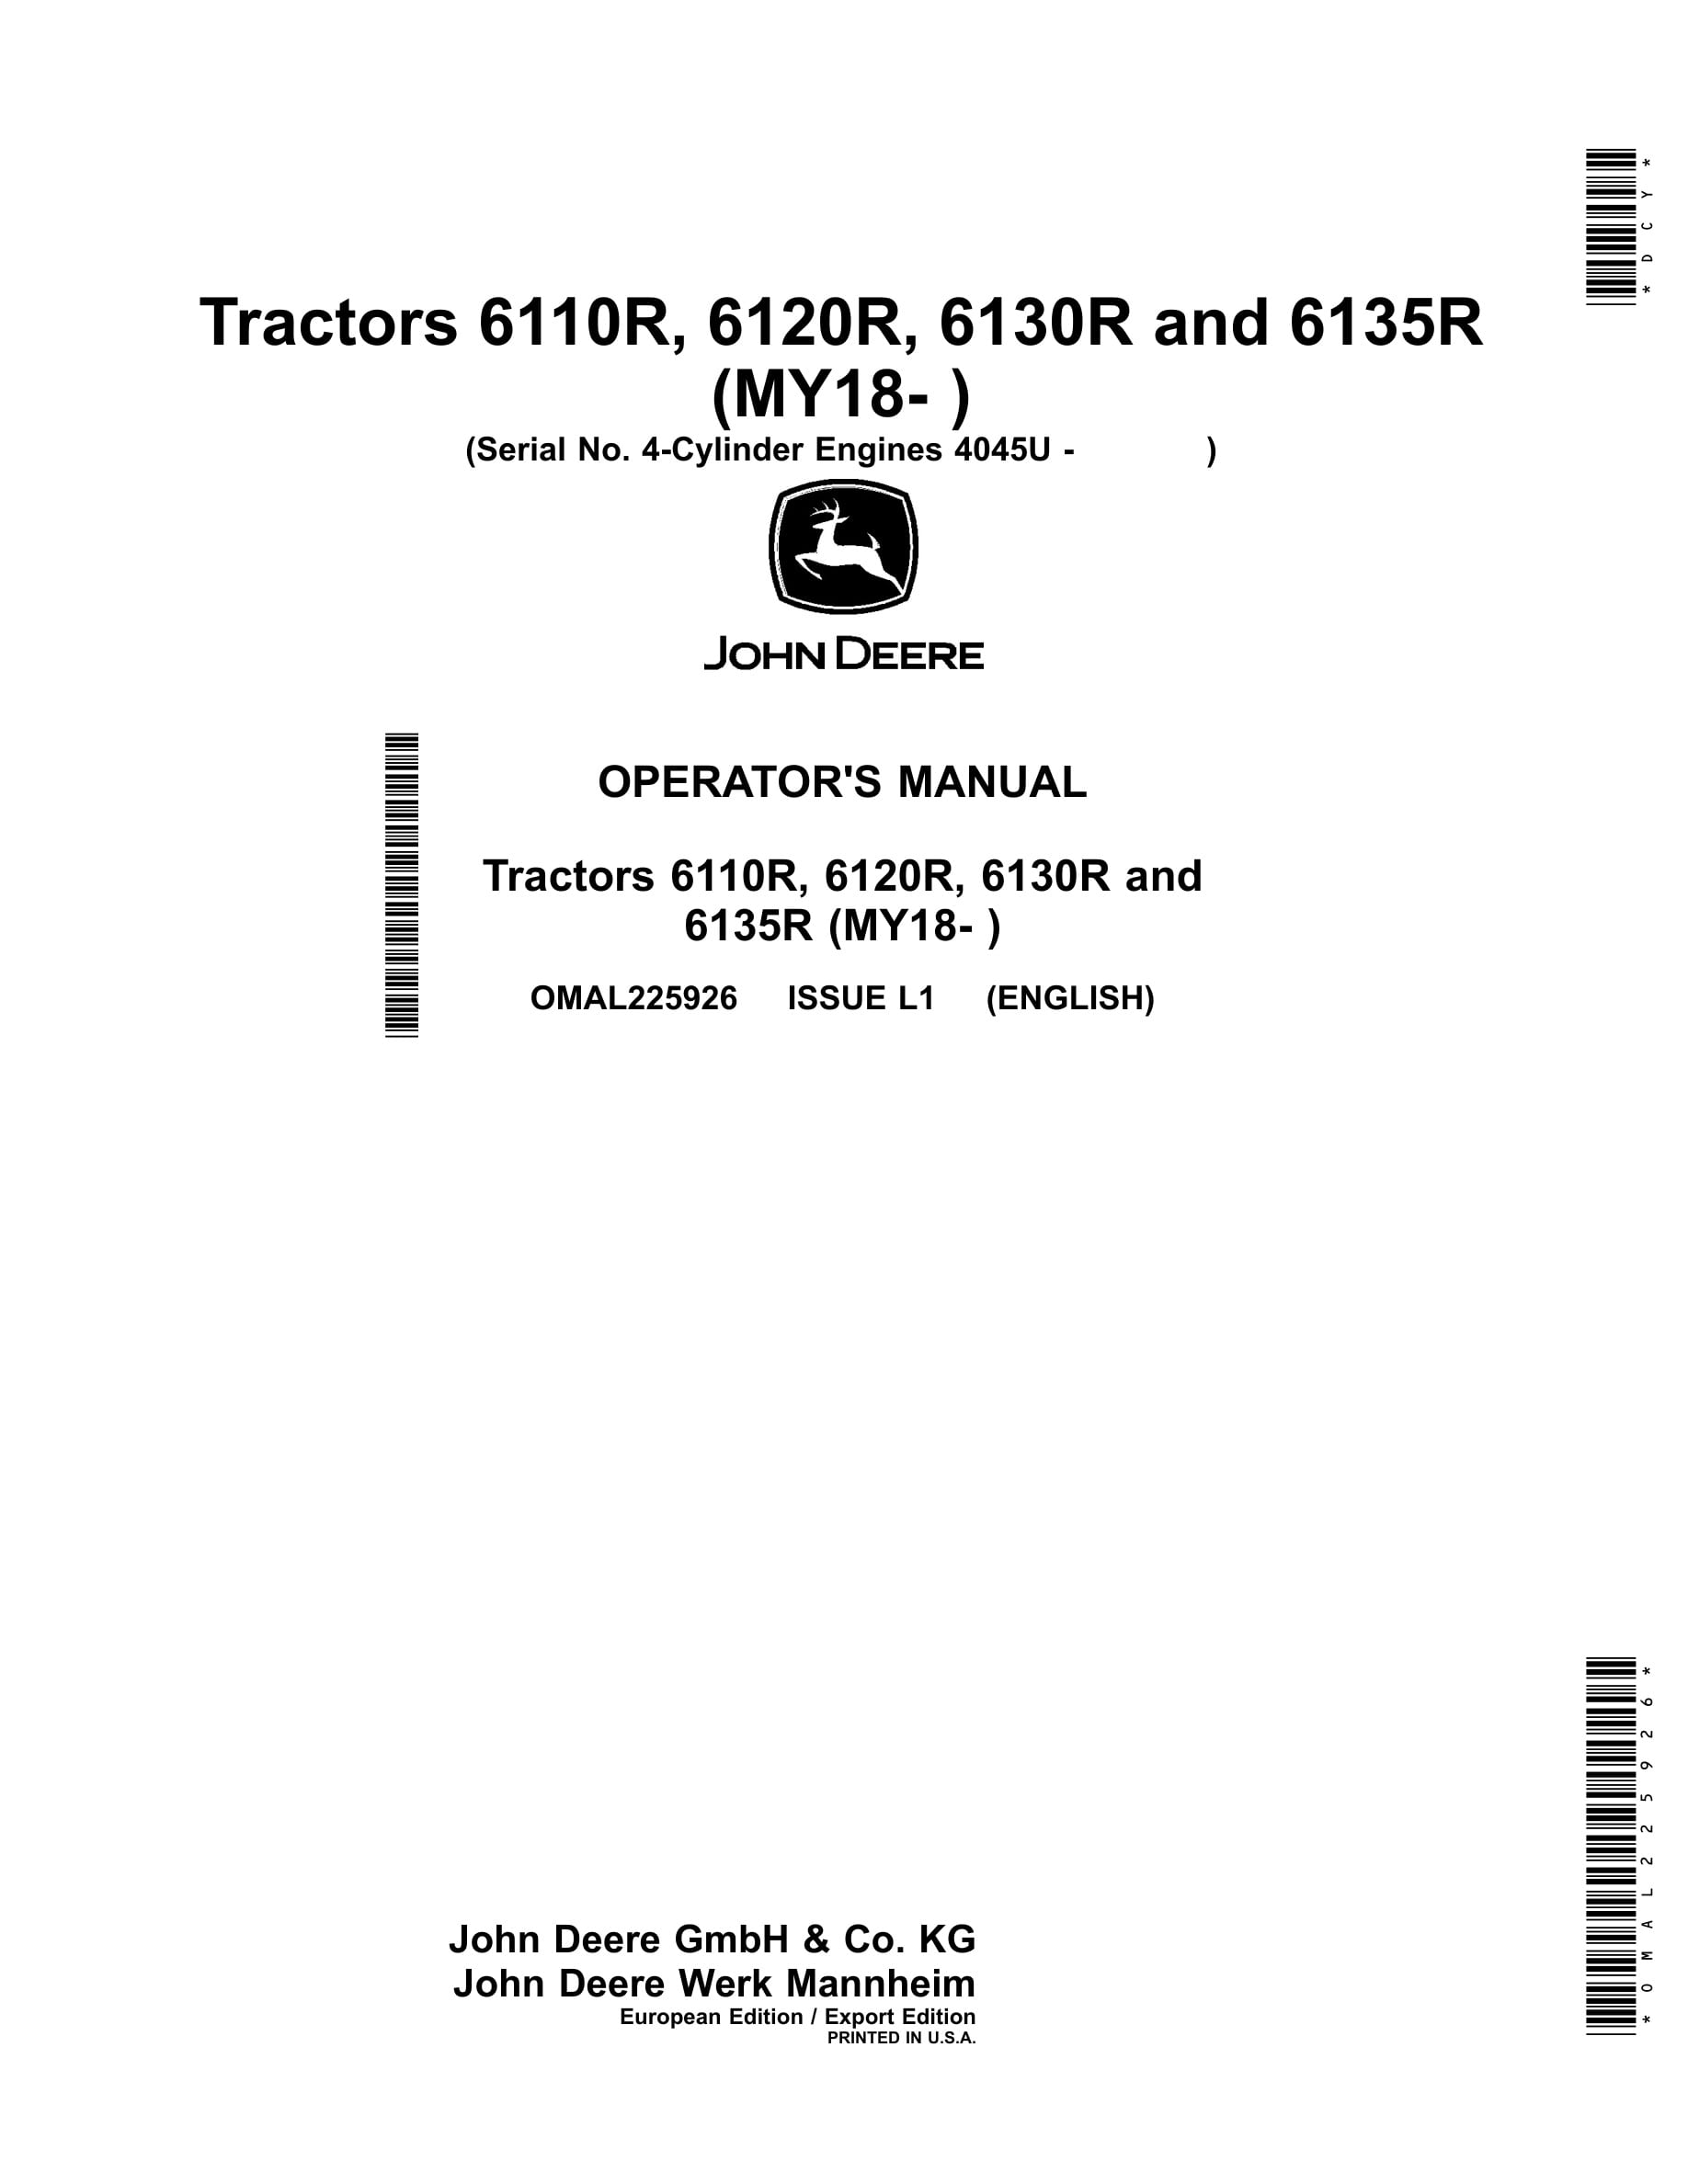 John Deere 6110r, 6120r, 6130r And 6135r Tractors Operator Manuals OMAL225926-1